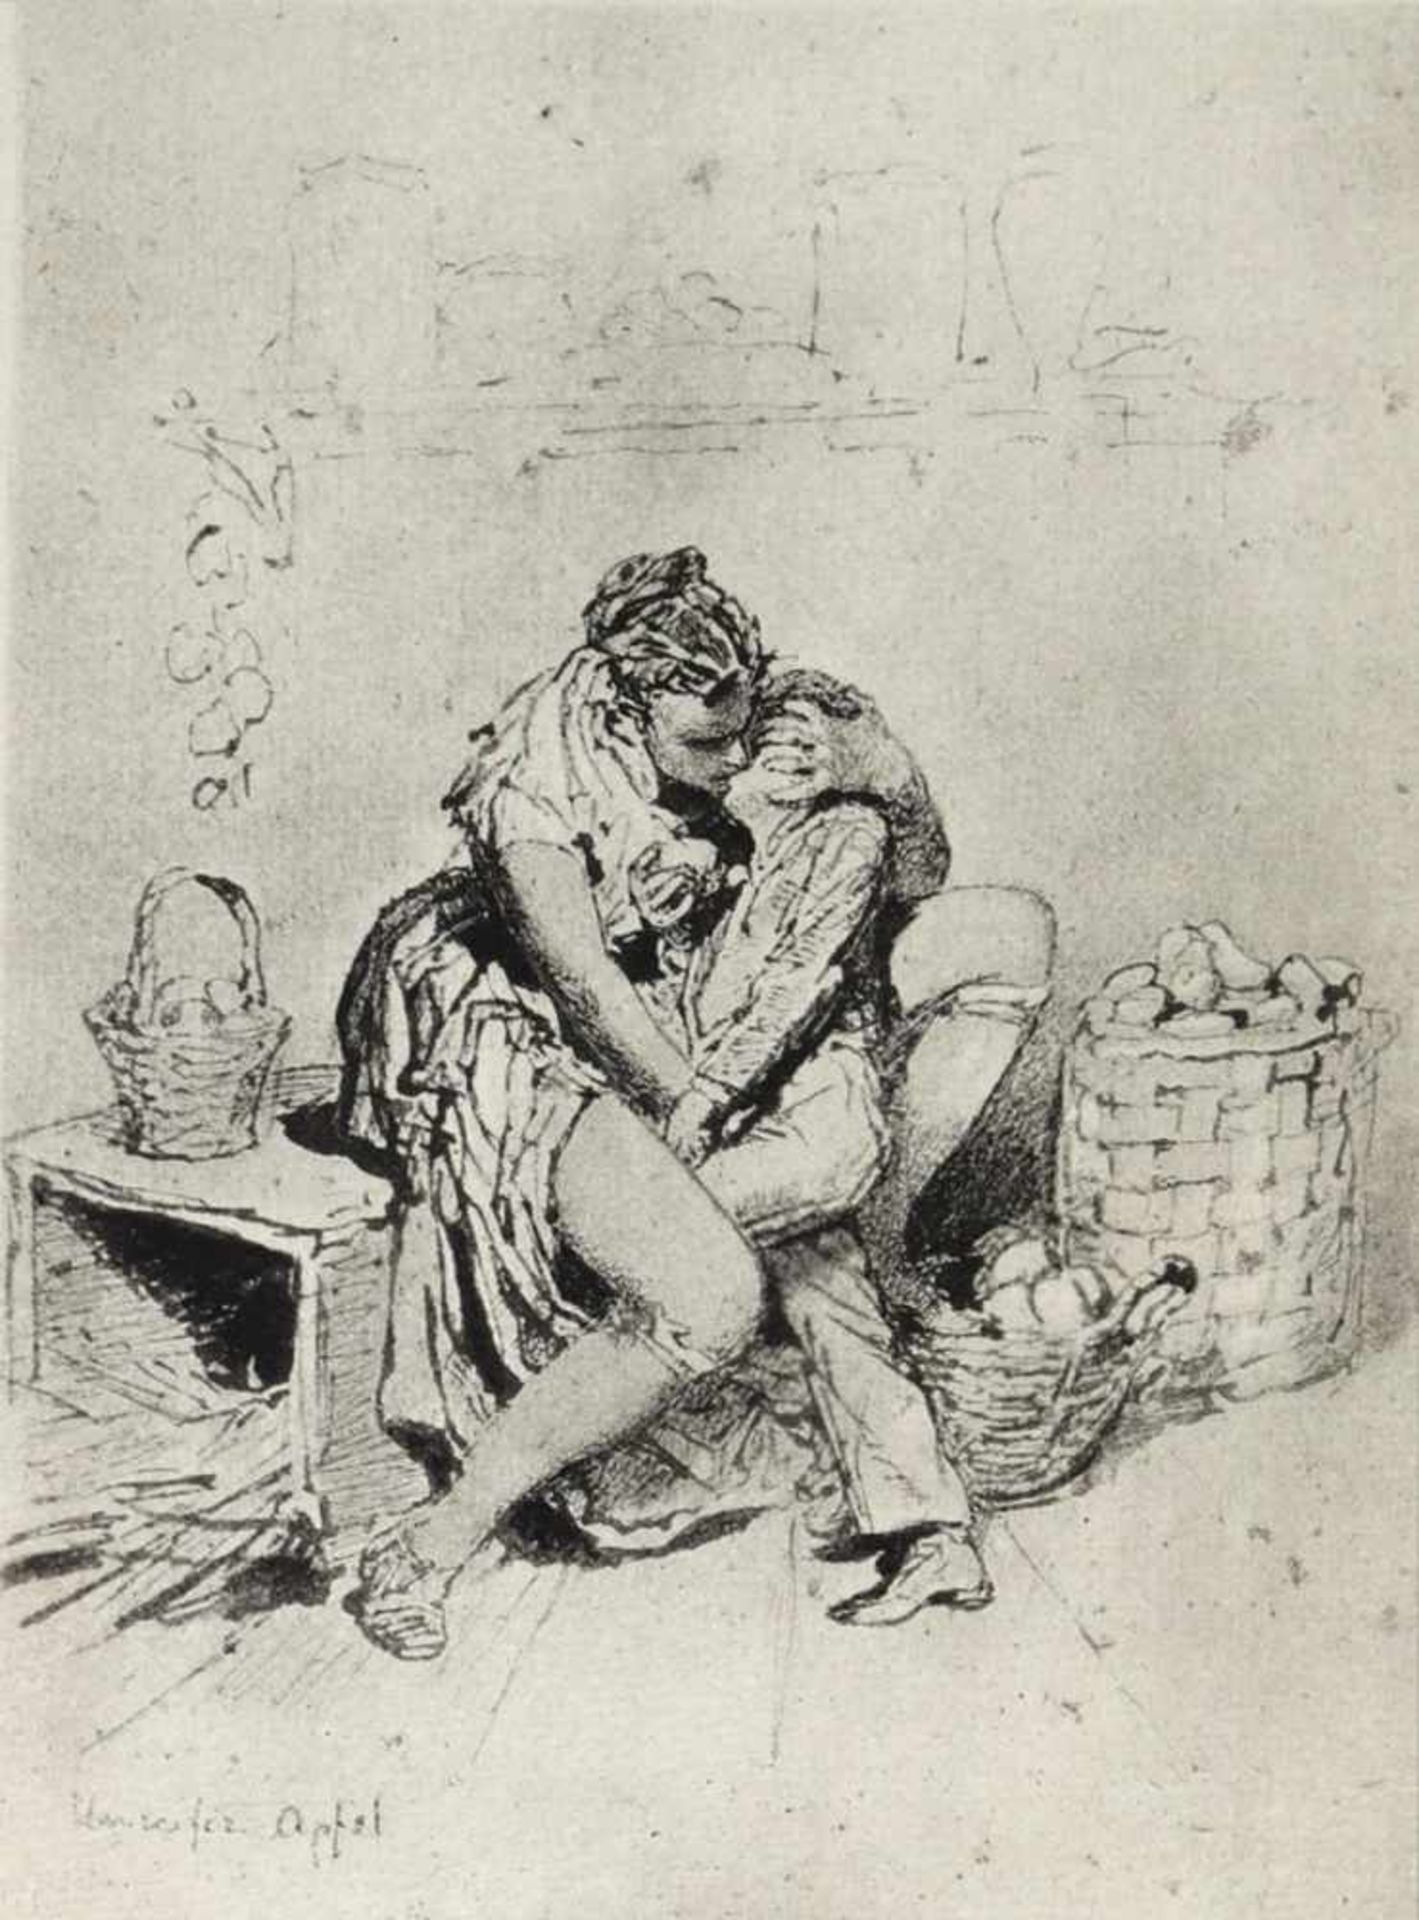 Zichy, Mihaly von(1827 Zala - Petersburg 1906). 12 Bl. Heliogravuren mit erotischen Darstellungen.